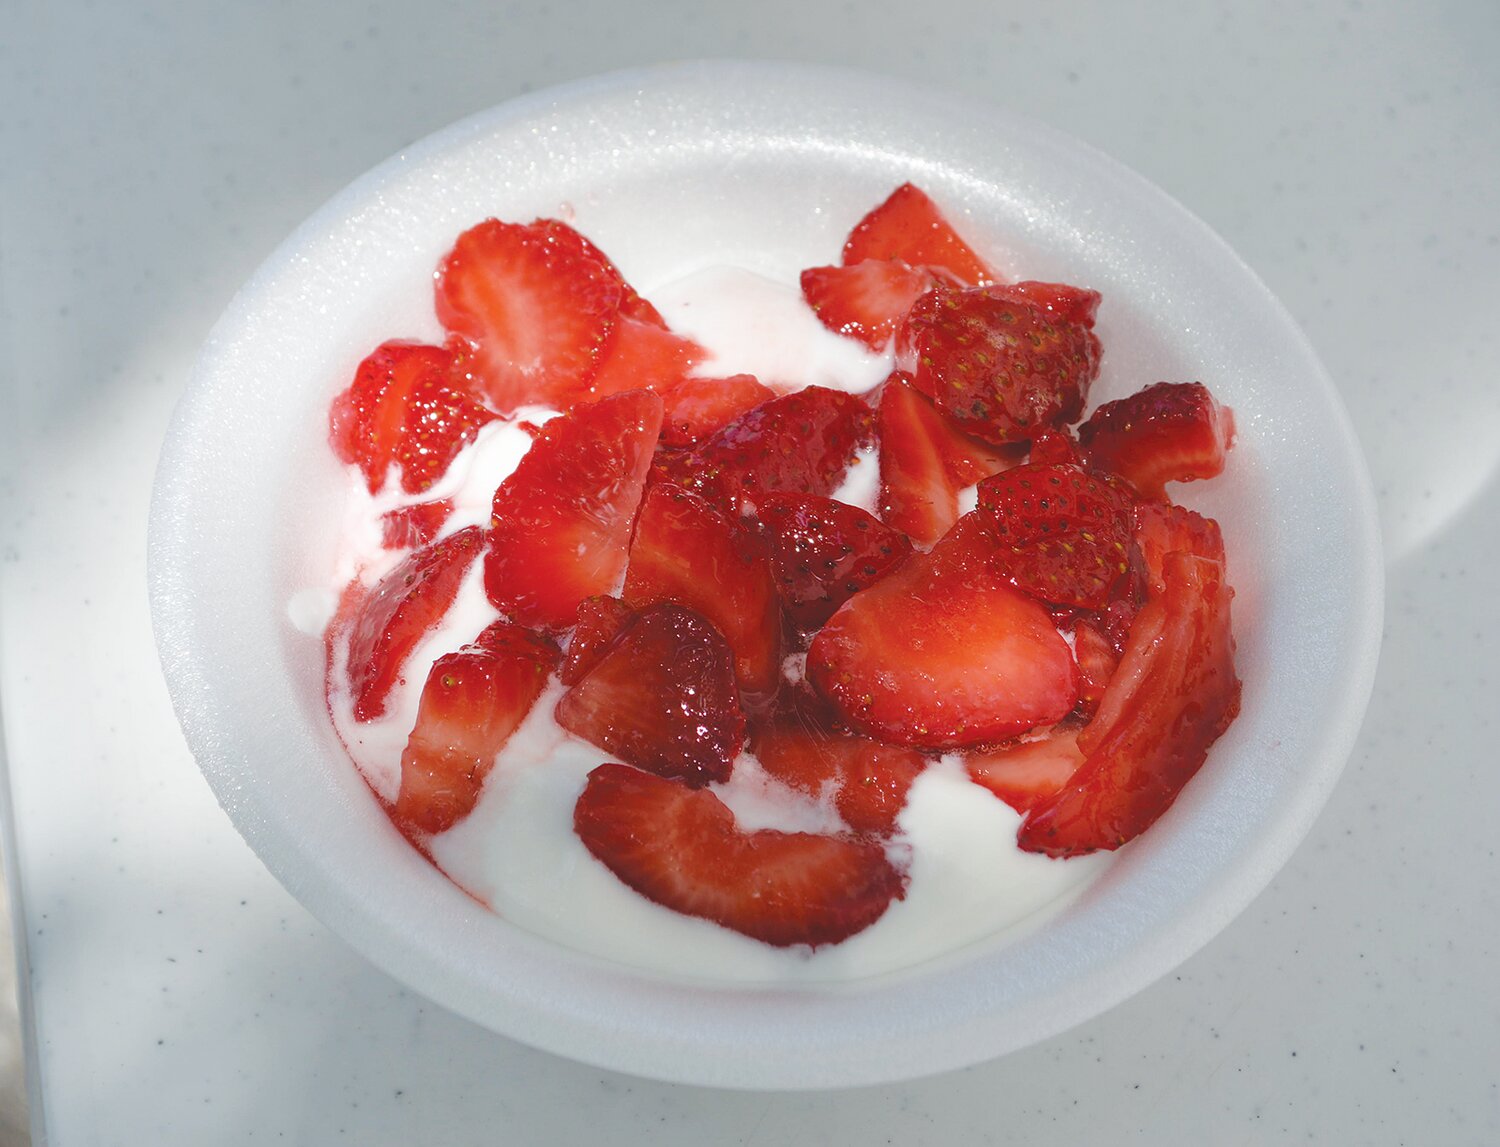 Strawberries and homemade ice cream